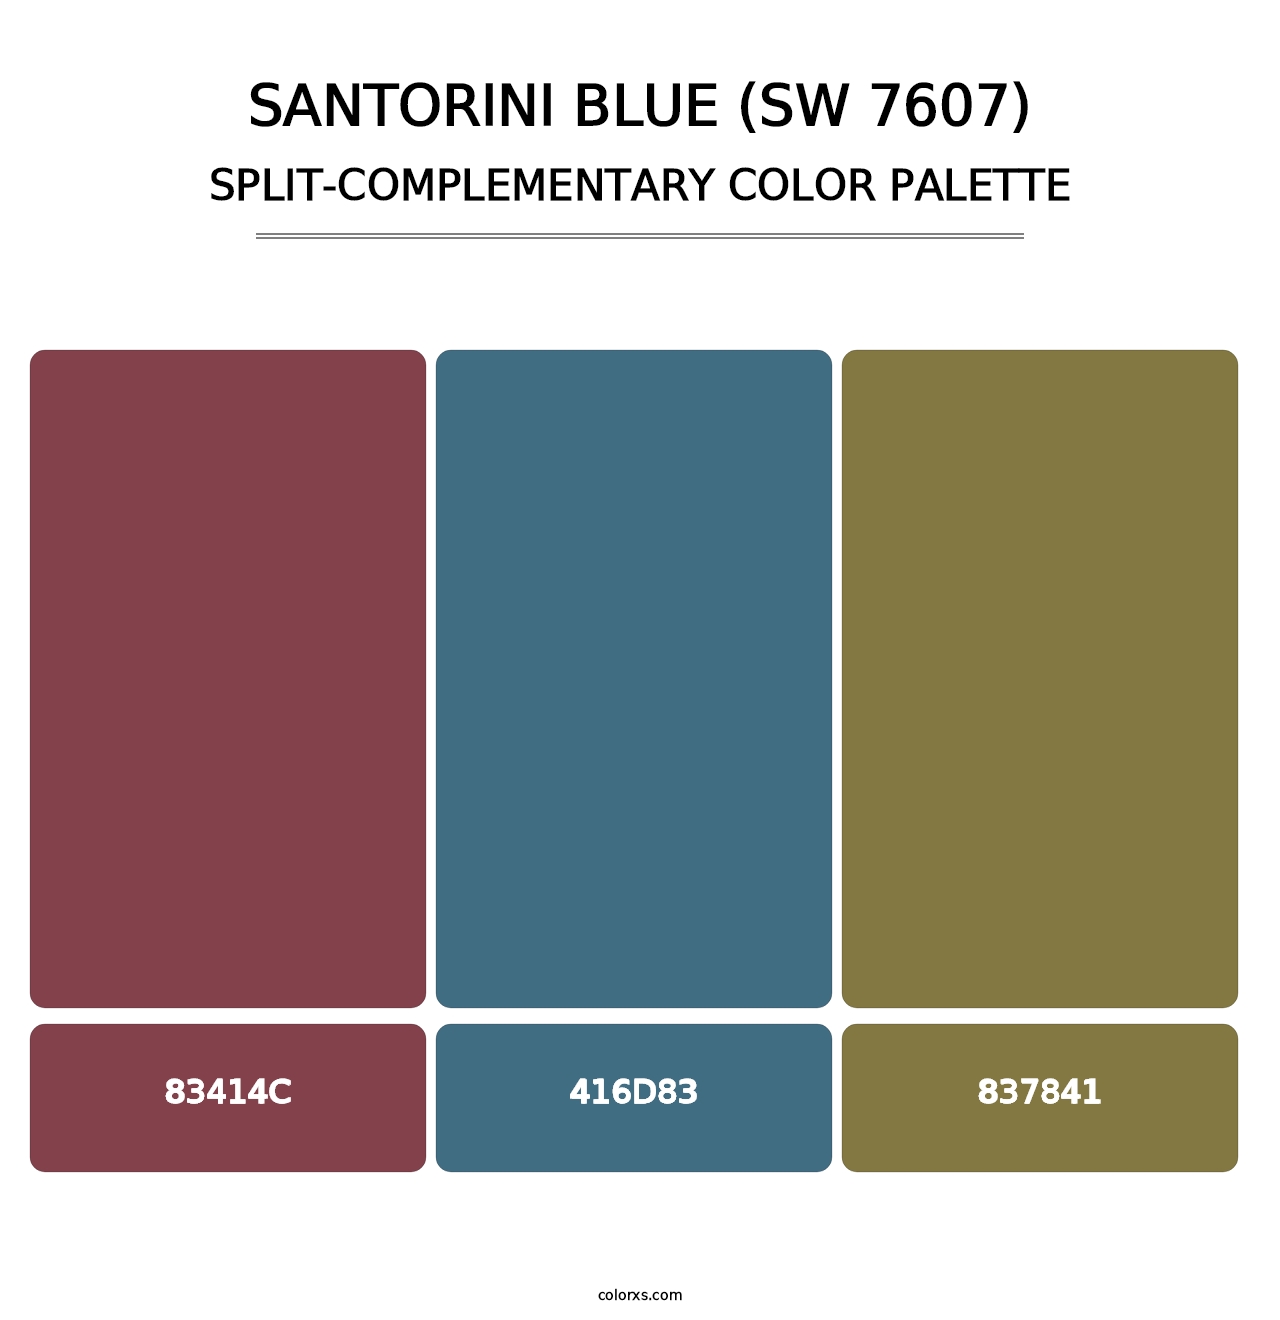 Santorini Blue (SW 7607) - Split-Complementary Color Palette